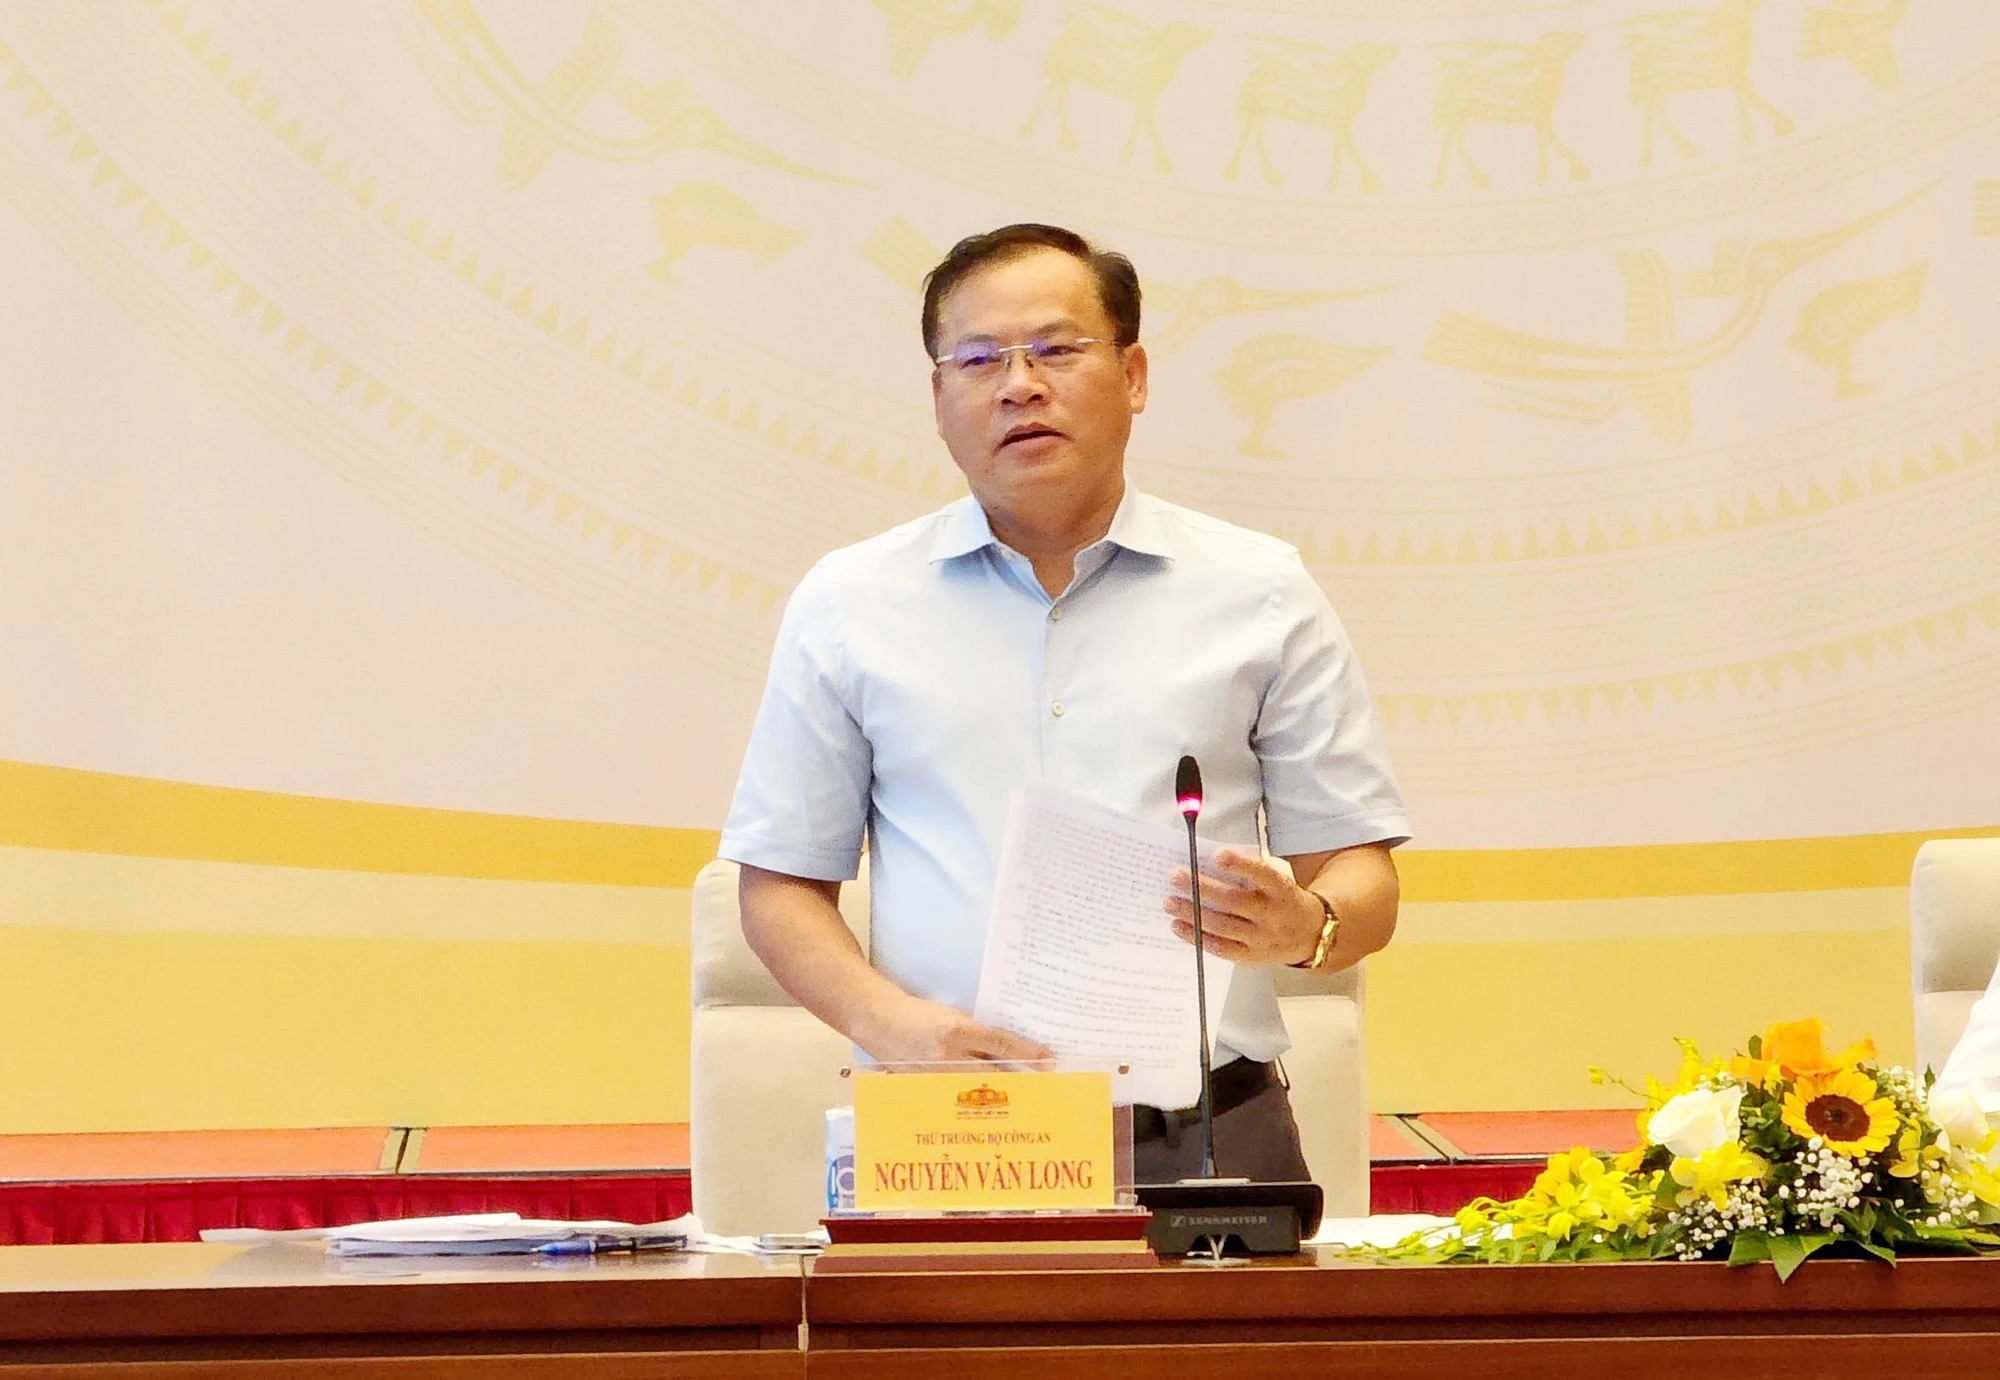 Thiếu tướng Nguyễn Văn Long - Thứ trưởng Bộ Công an